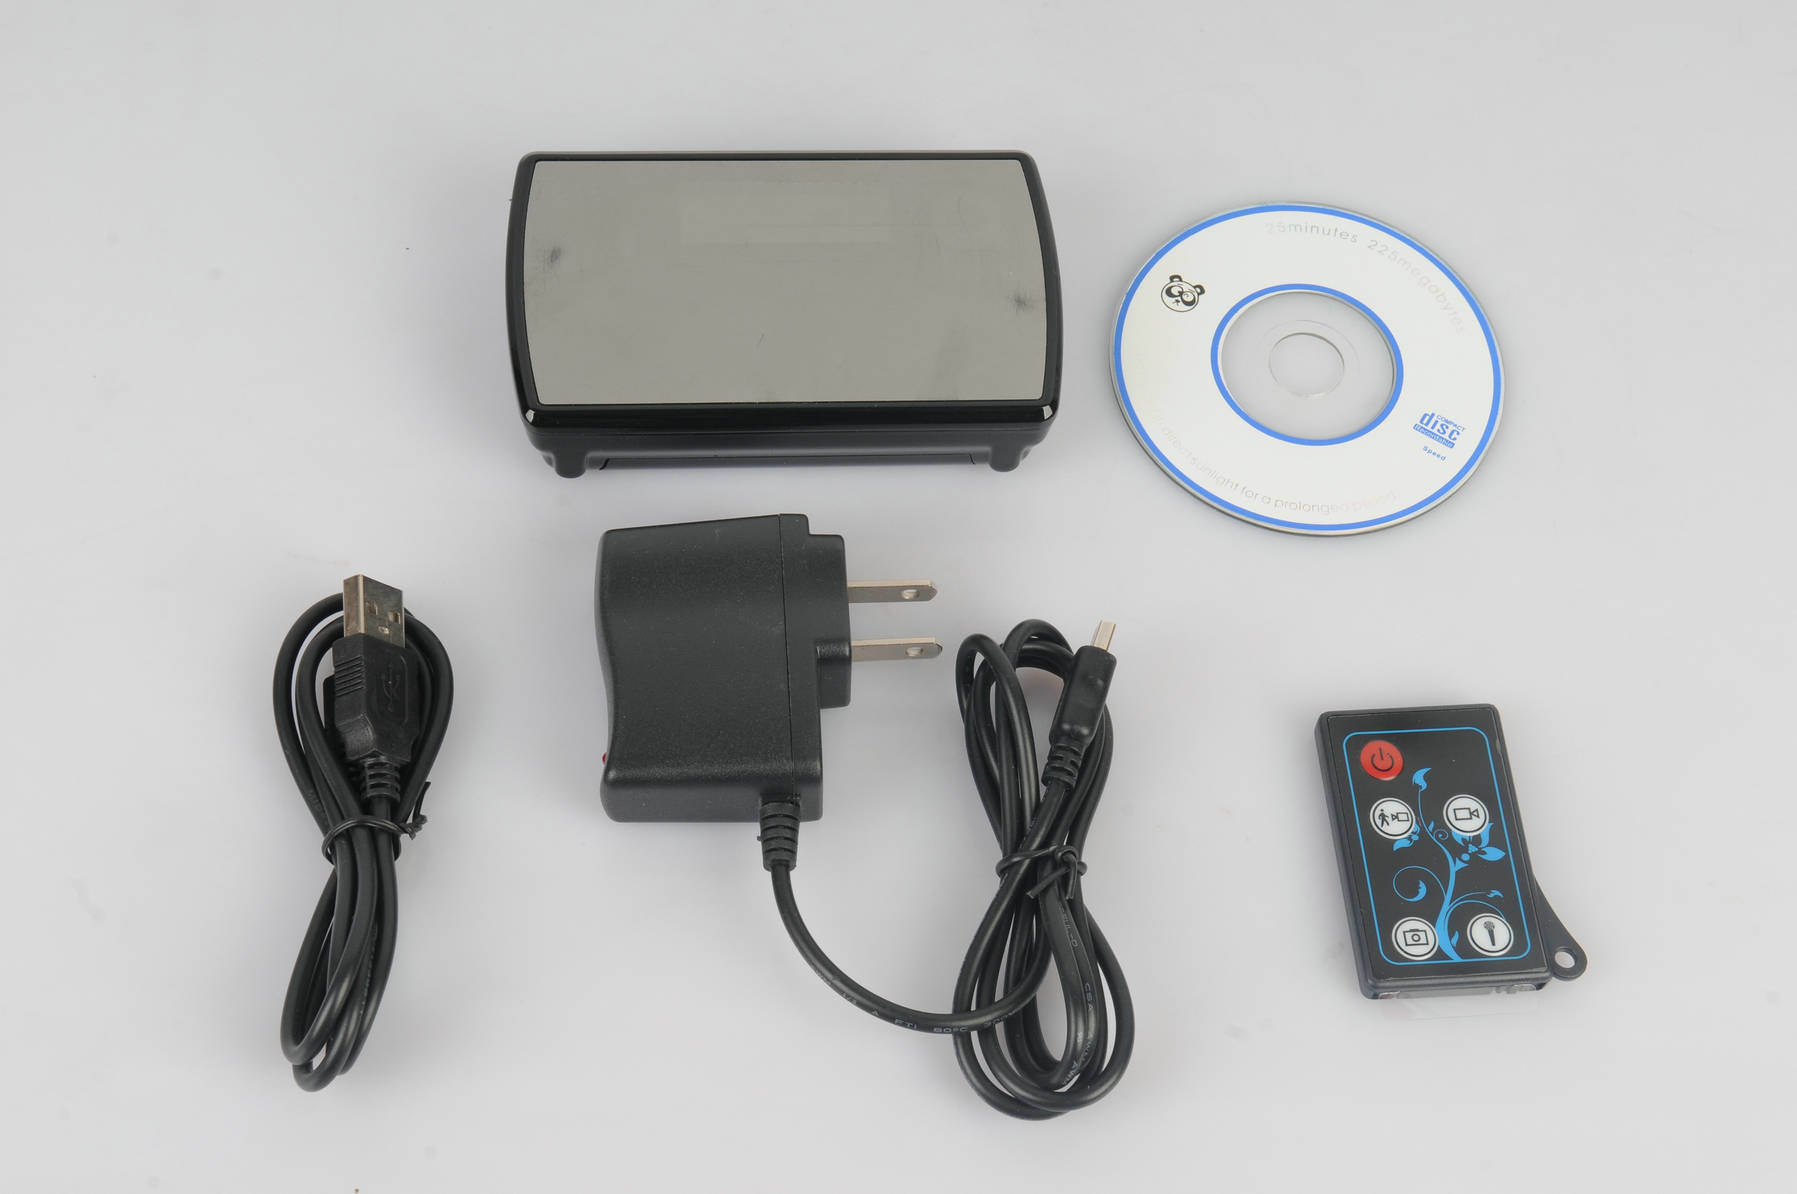 Table Colok Camera and Video Recorder, Mini DVR, Take Photo, Remote Control Ecm-Cl10A